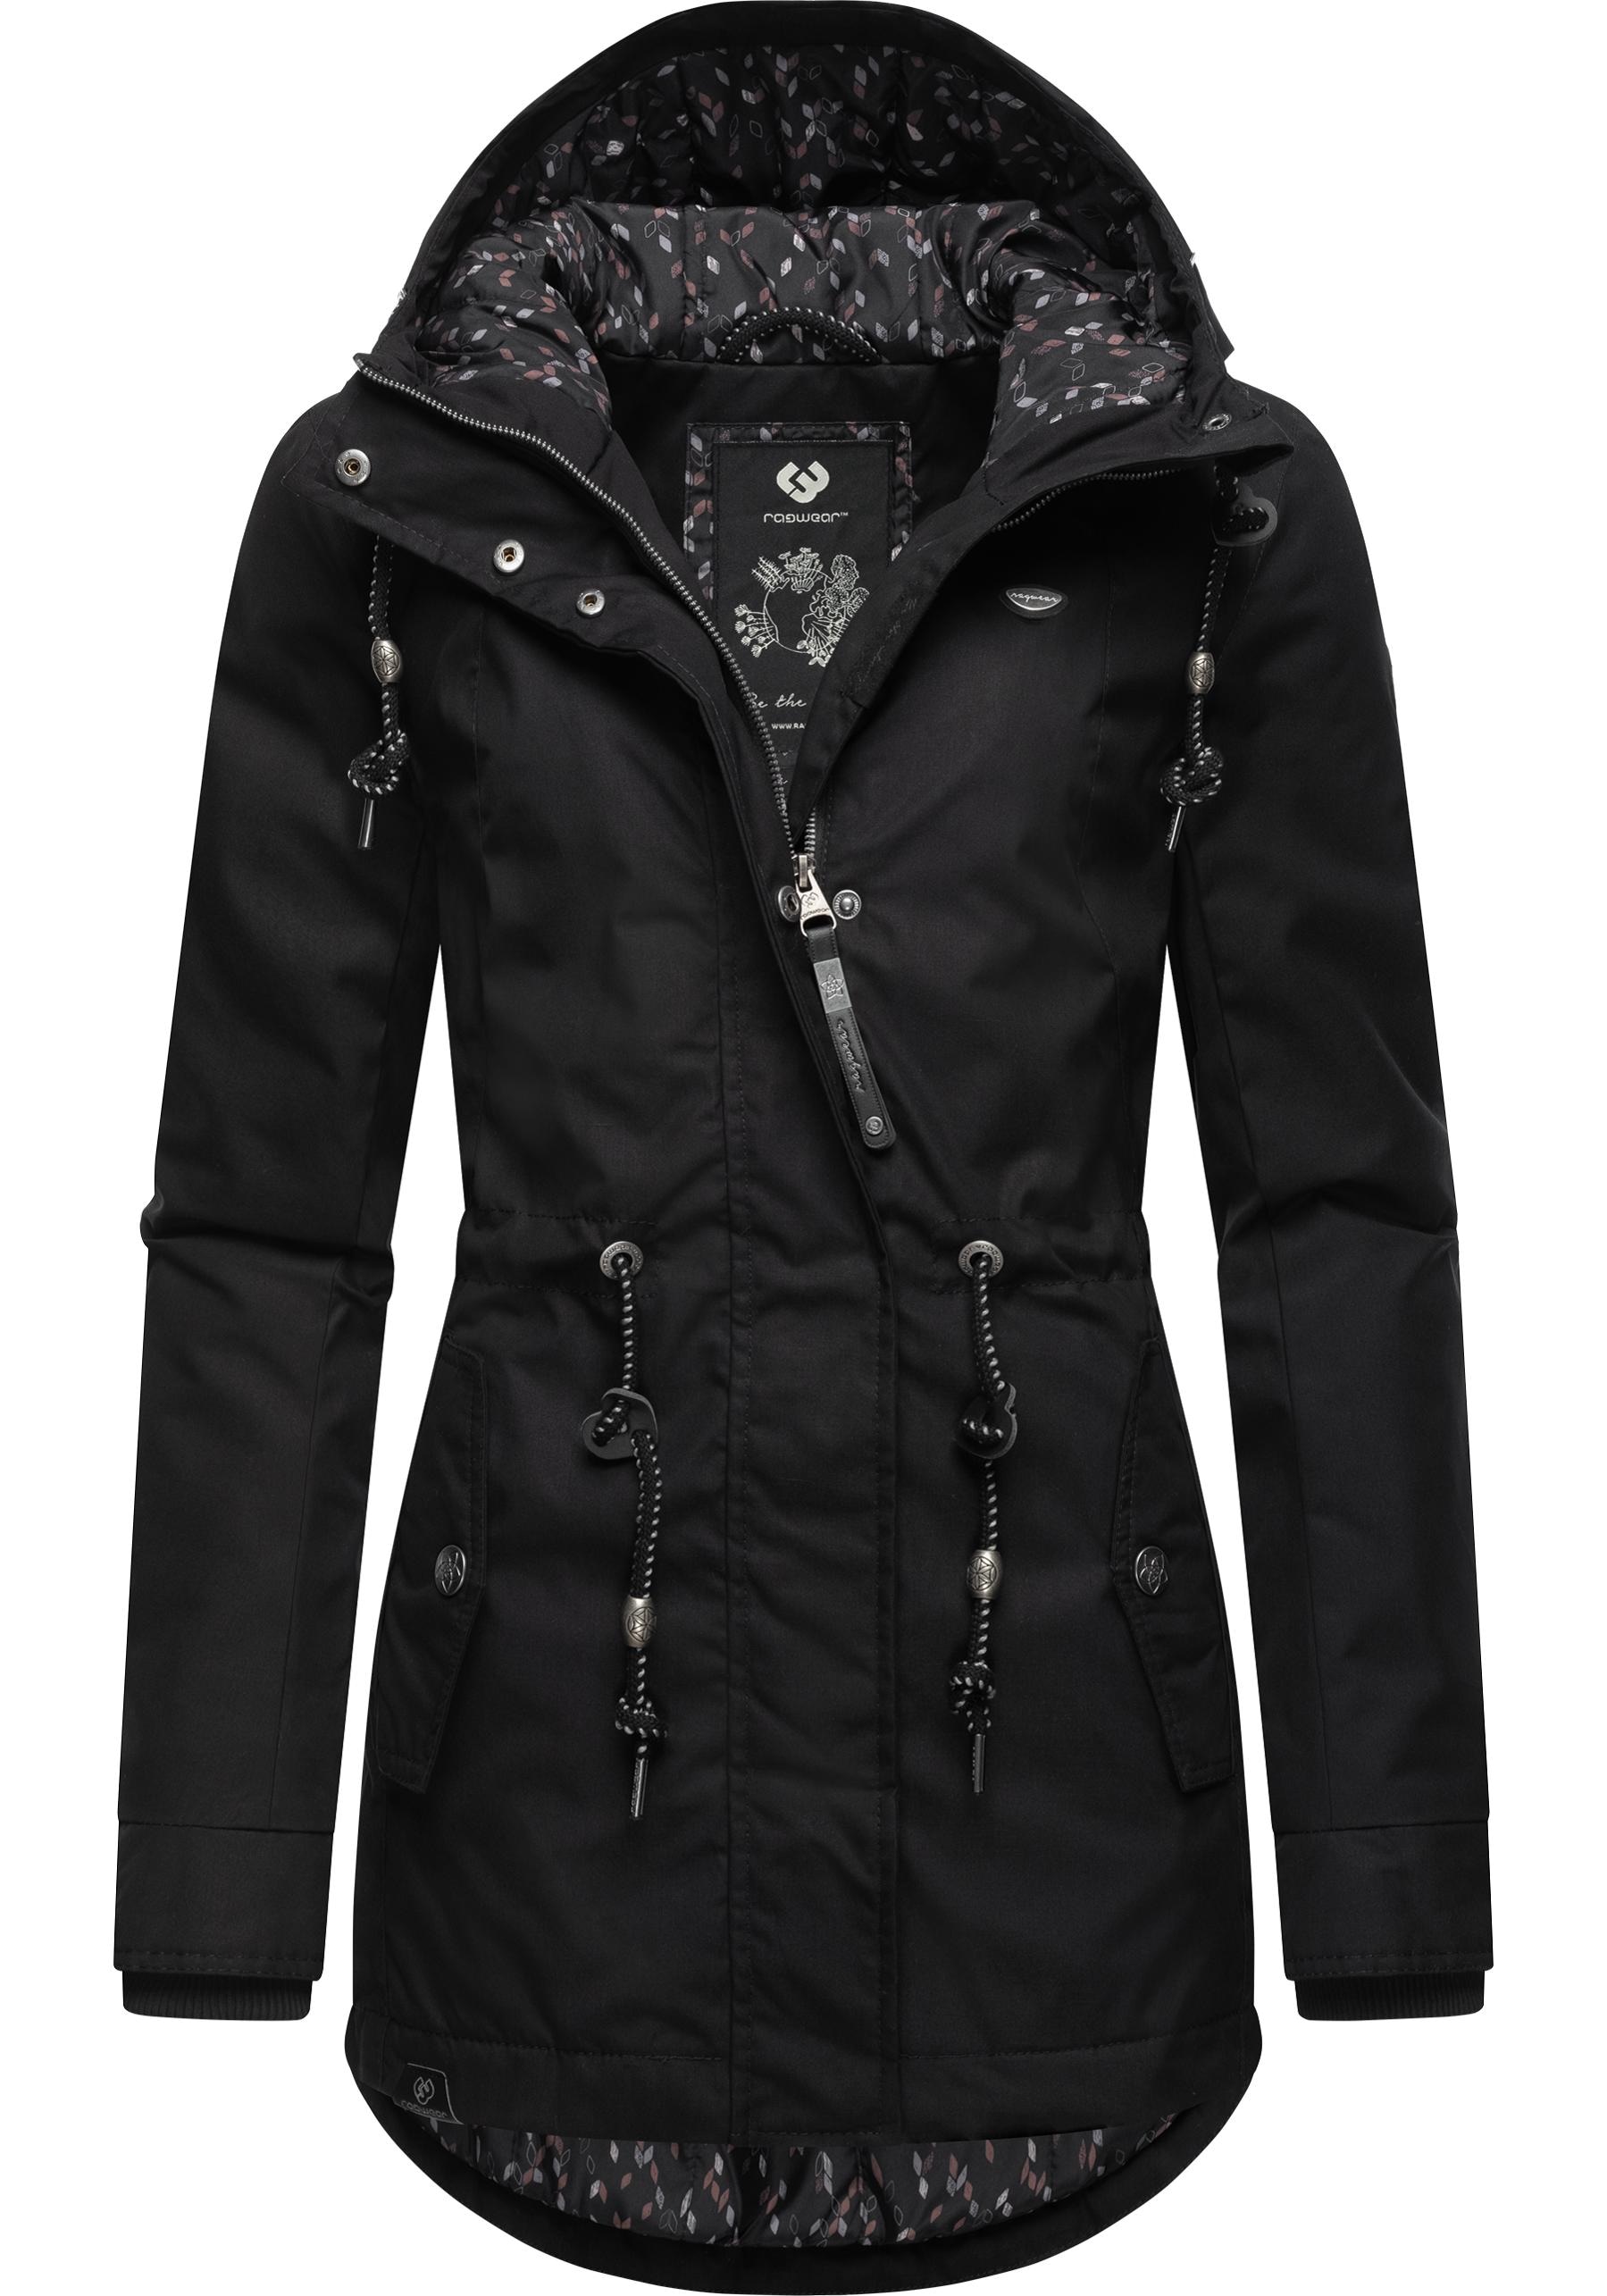 Ragwear Winterjacke »Monadis Black Label«, mit Kapuze, stylischer  Winterparka für die kalte Jahreszeit online